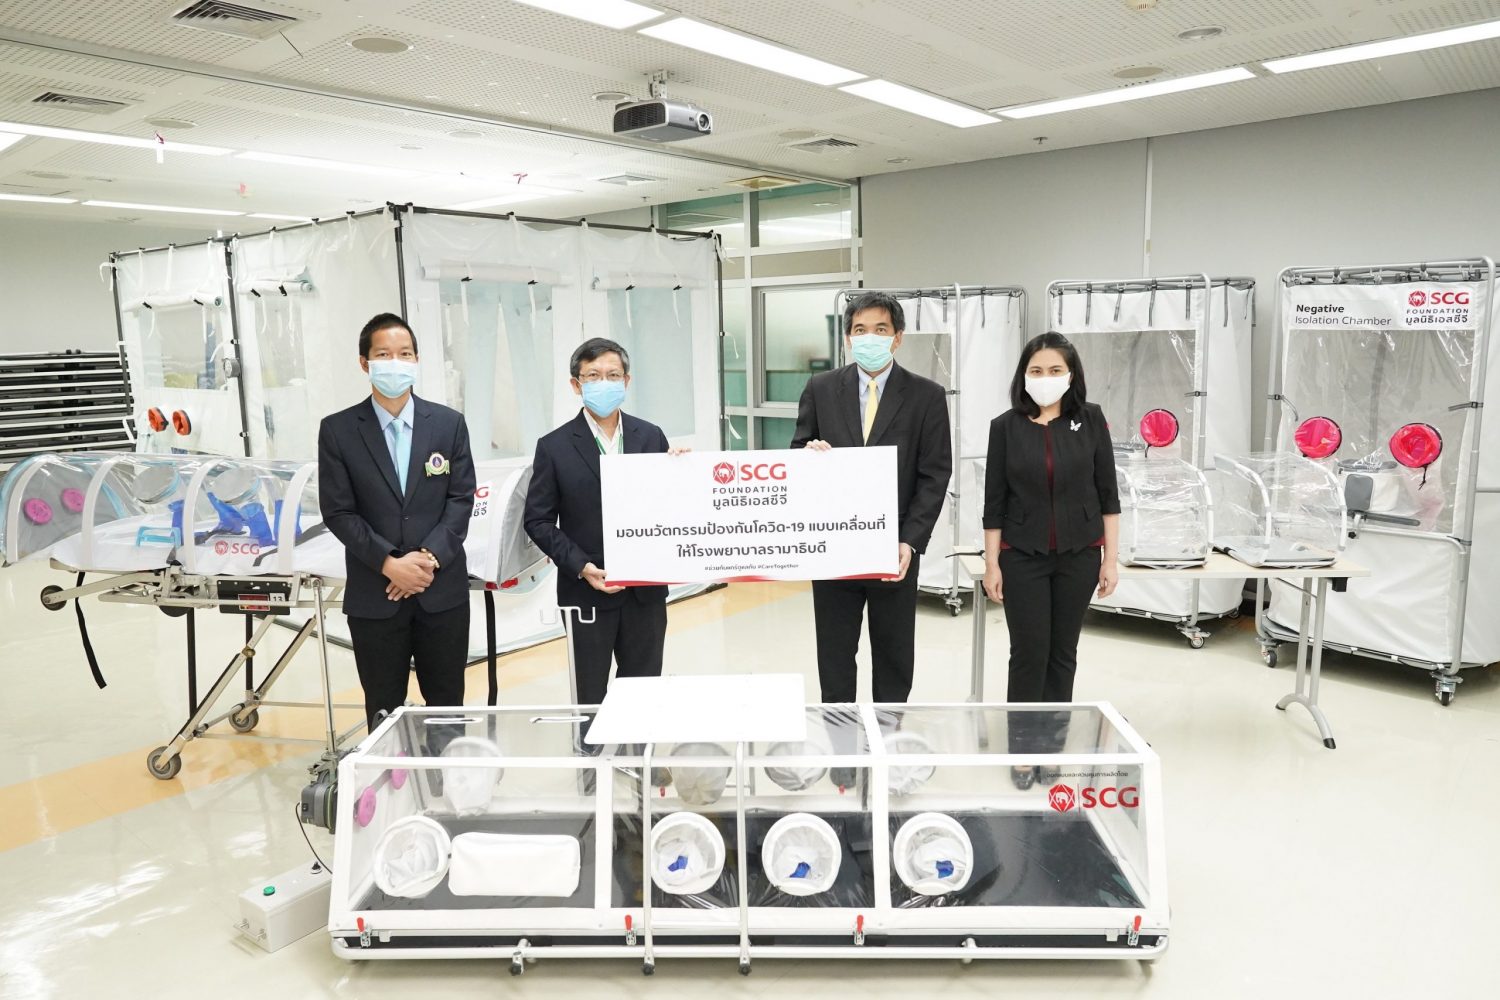 ภาพข่าว: มูลนิธิเอสซีจี เดินหน้าส่งมอบนวัตกรรมป้องกันโควิด-19 แบบเคลื่อนที่ ให้แก่โรงพยาบาลรามาธิบดี